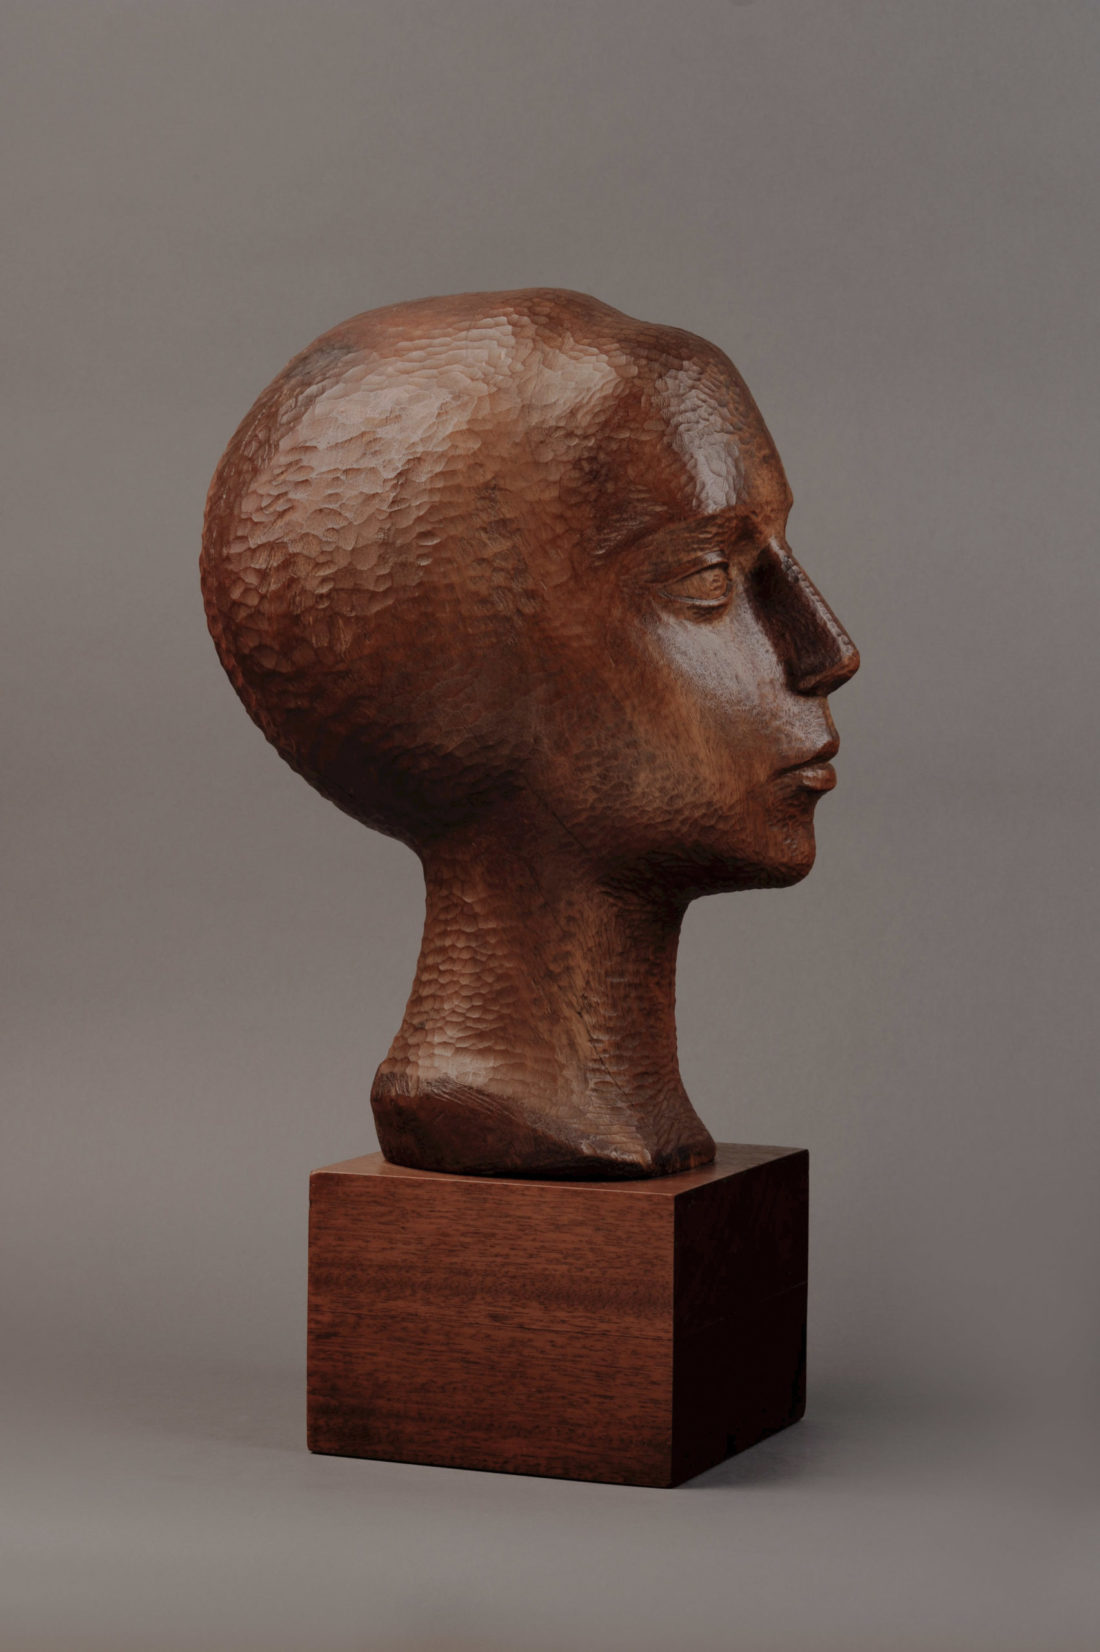 
		                					William Zorach		                																	
																											<i>Head of a Woman (Girl's head, Dahlov),</i>  
																																								1922, 
																																								Mexican mahogany on original wood base, 
																																								13 7/8 x 11 1/4 x 7 1/2 inches 
																								
		                				